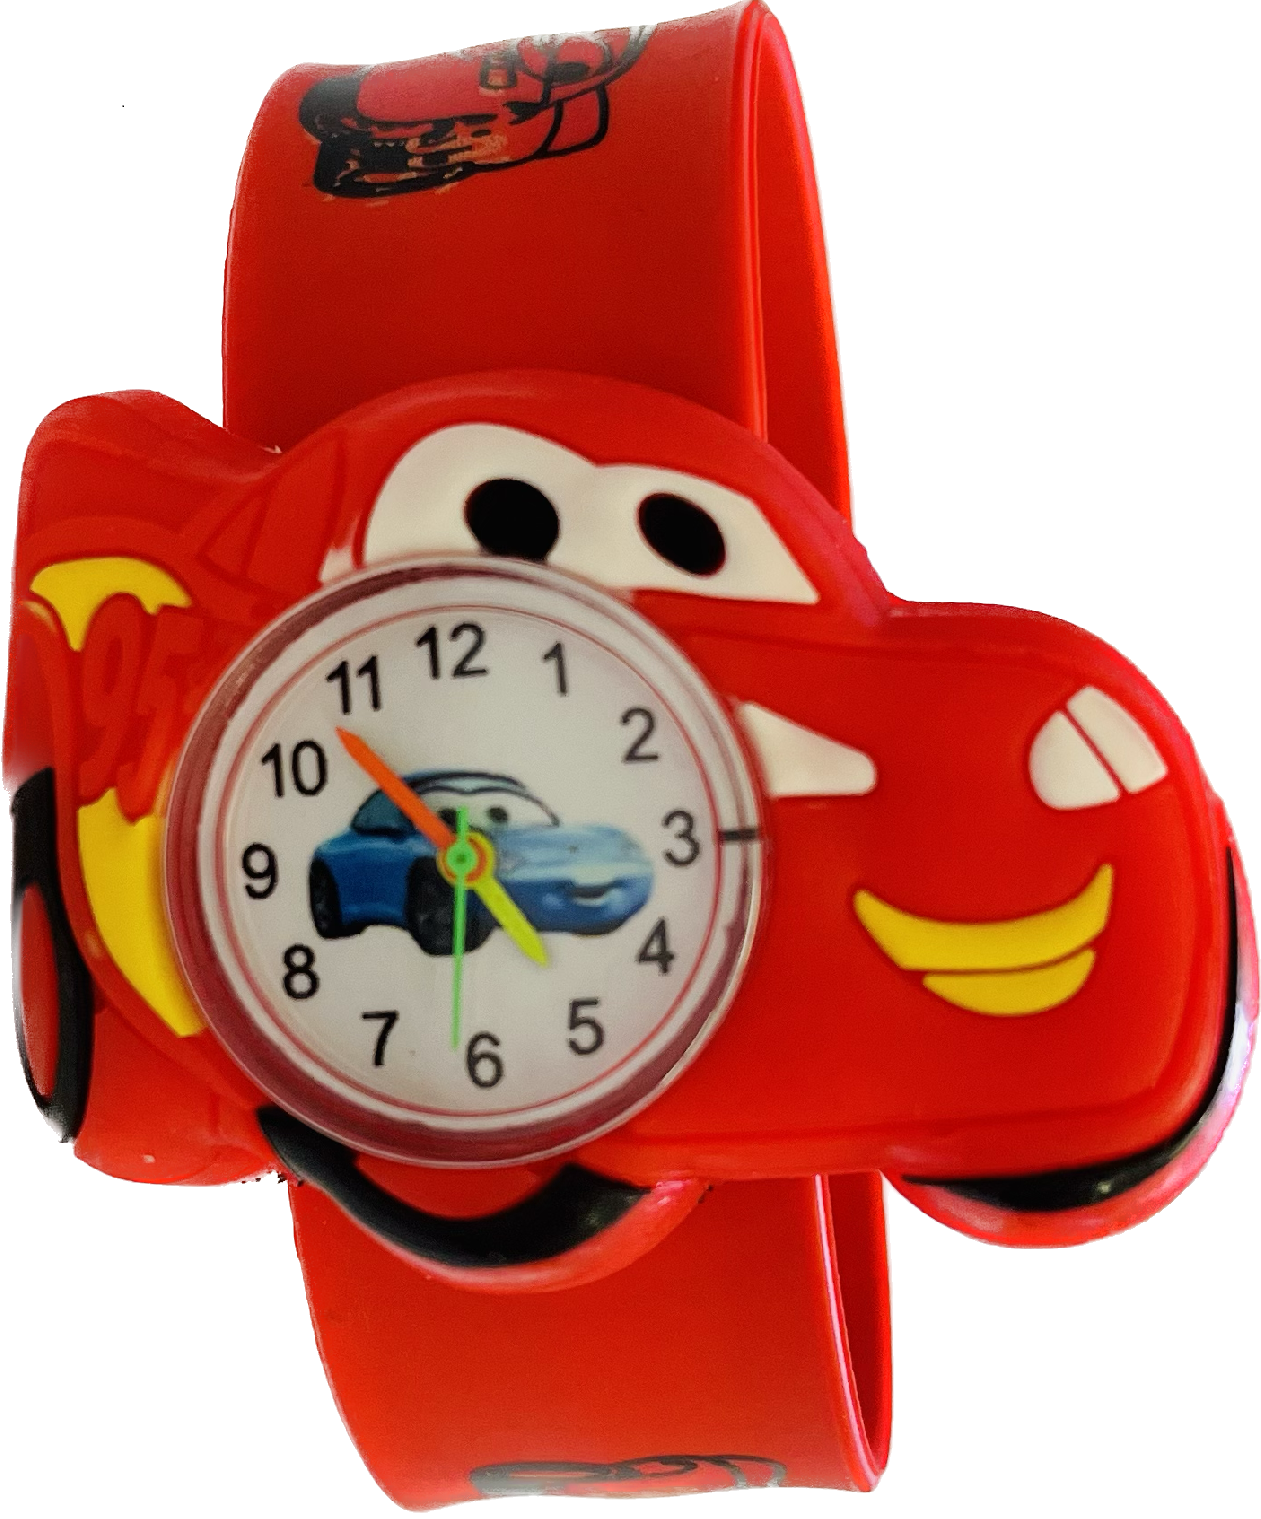 Načančaná.cz Dětské červené hodinky Auta Blesk McQueen - 2 motivy Motiv: B